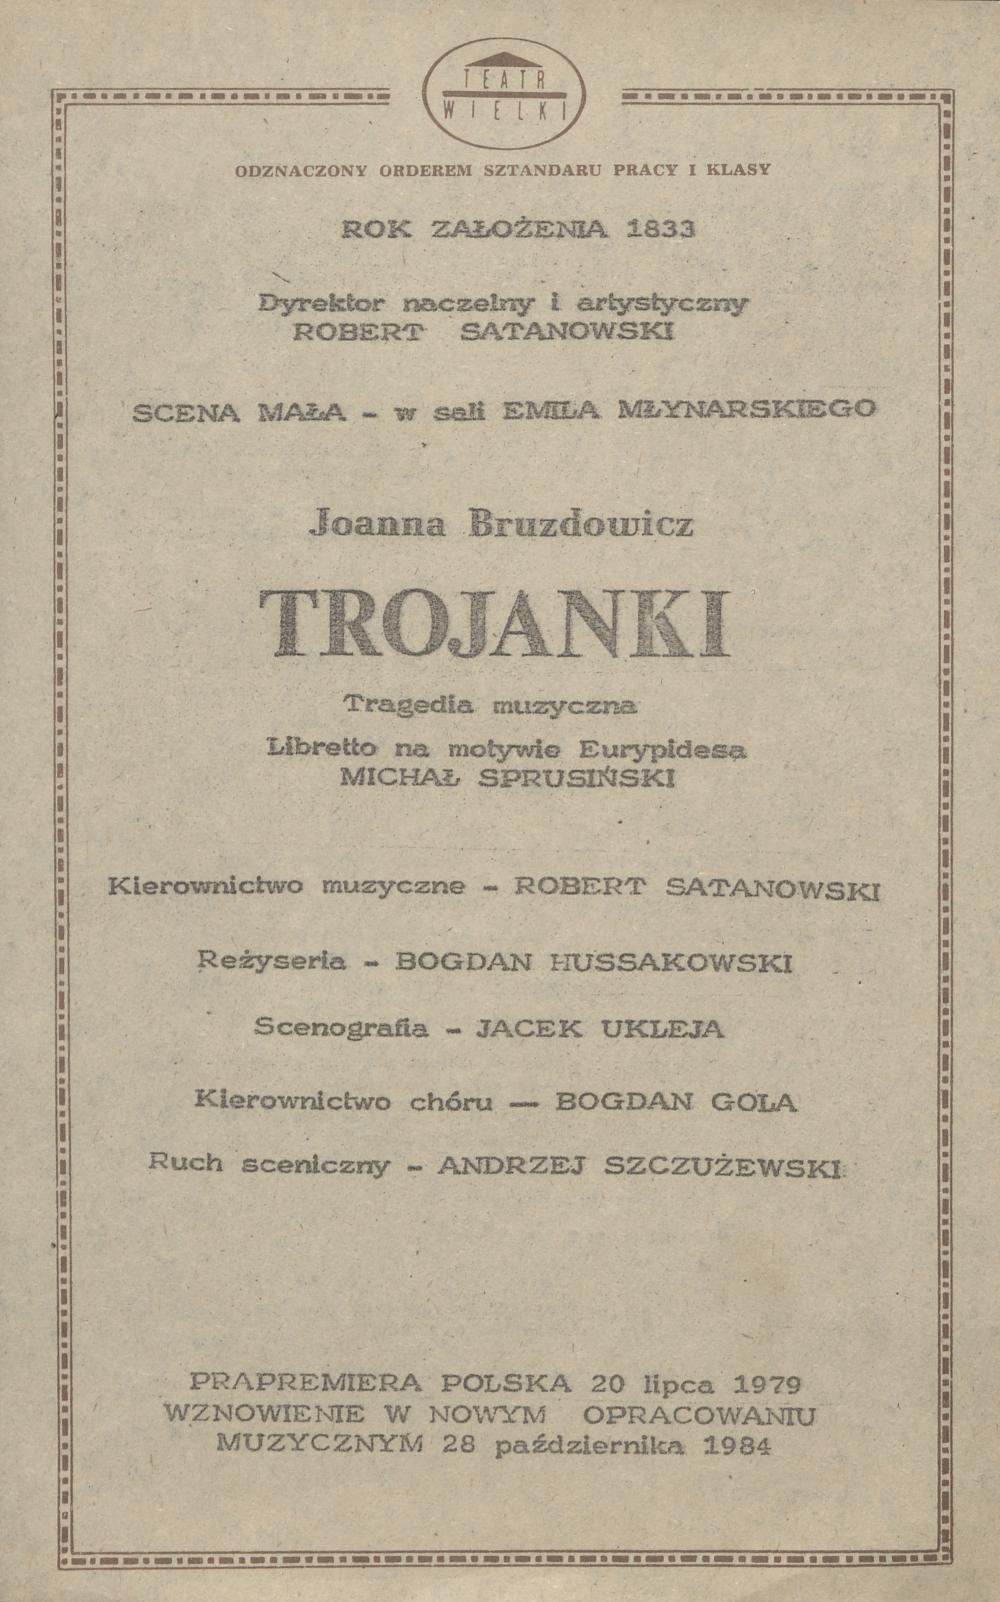 Wkładka obsadowa „Trojanki” Joanna Bruzdowicz 17-12-1985 pierwsze wznowienie 28-10-1984